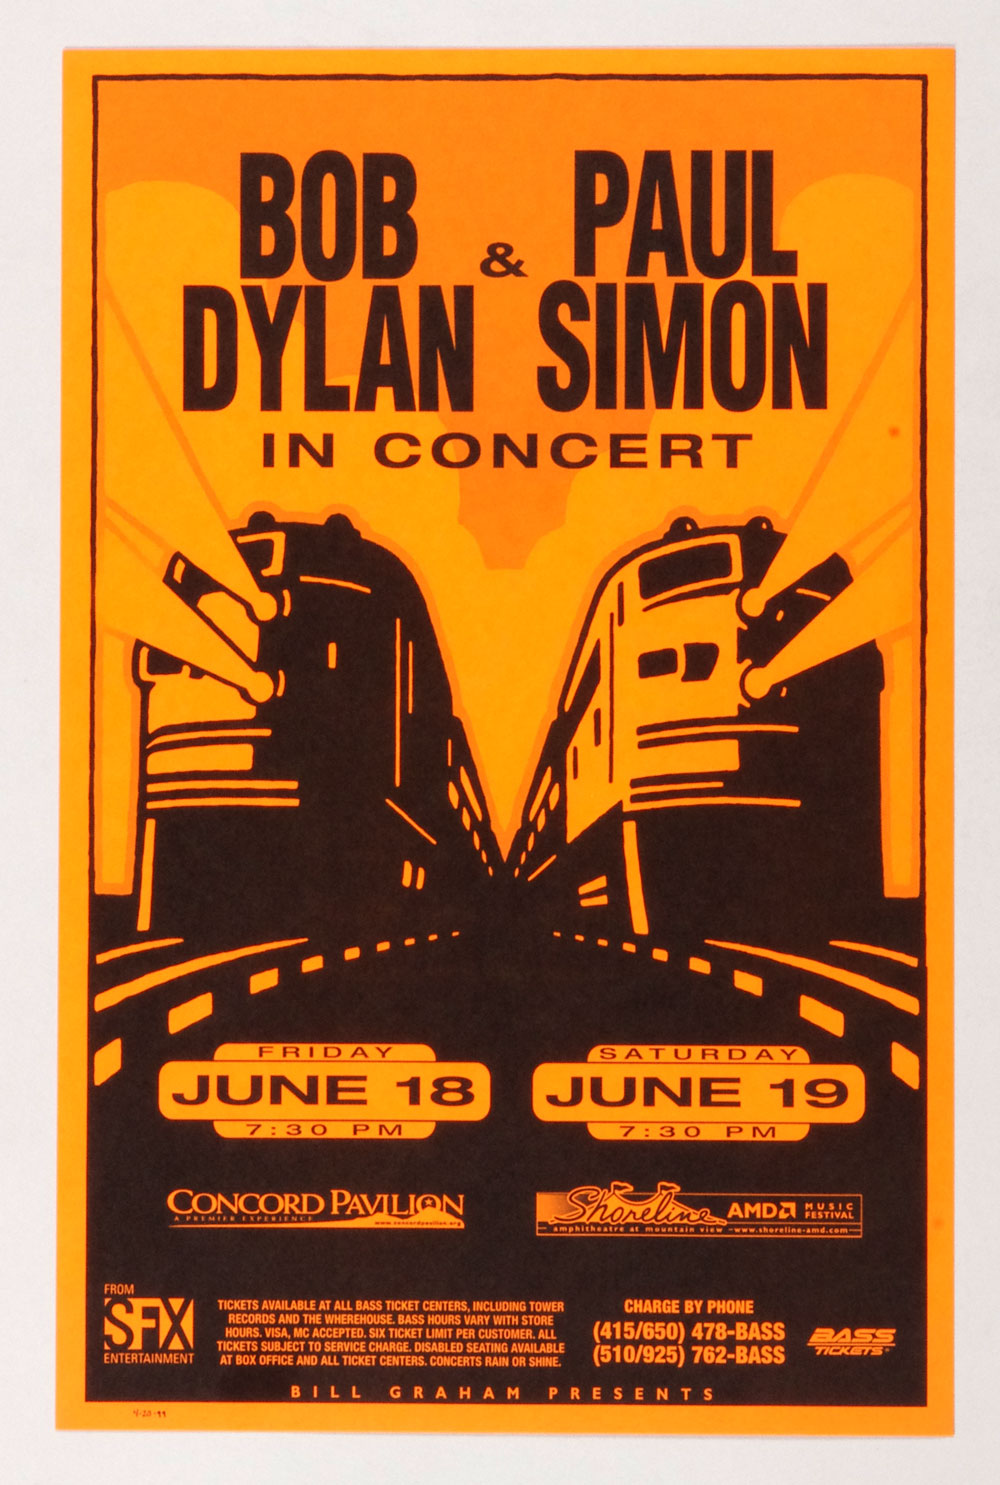 Bob Dylan Paul Simon Poster 1999 Jun 18 Concord Pavilion Shoreline Amphitheatre